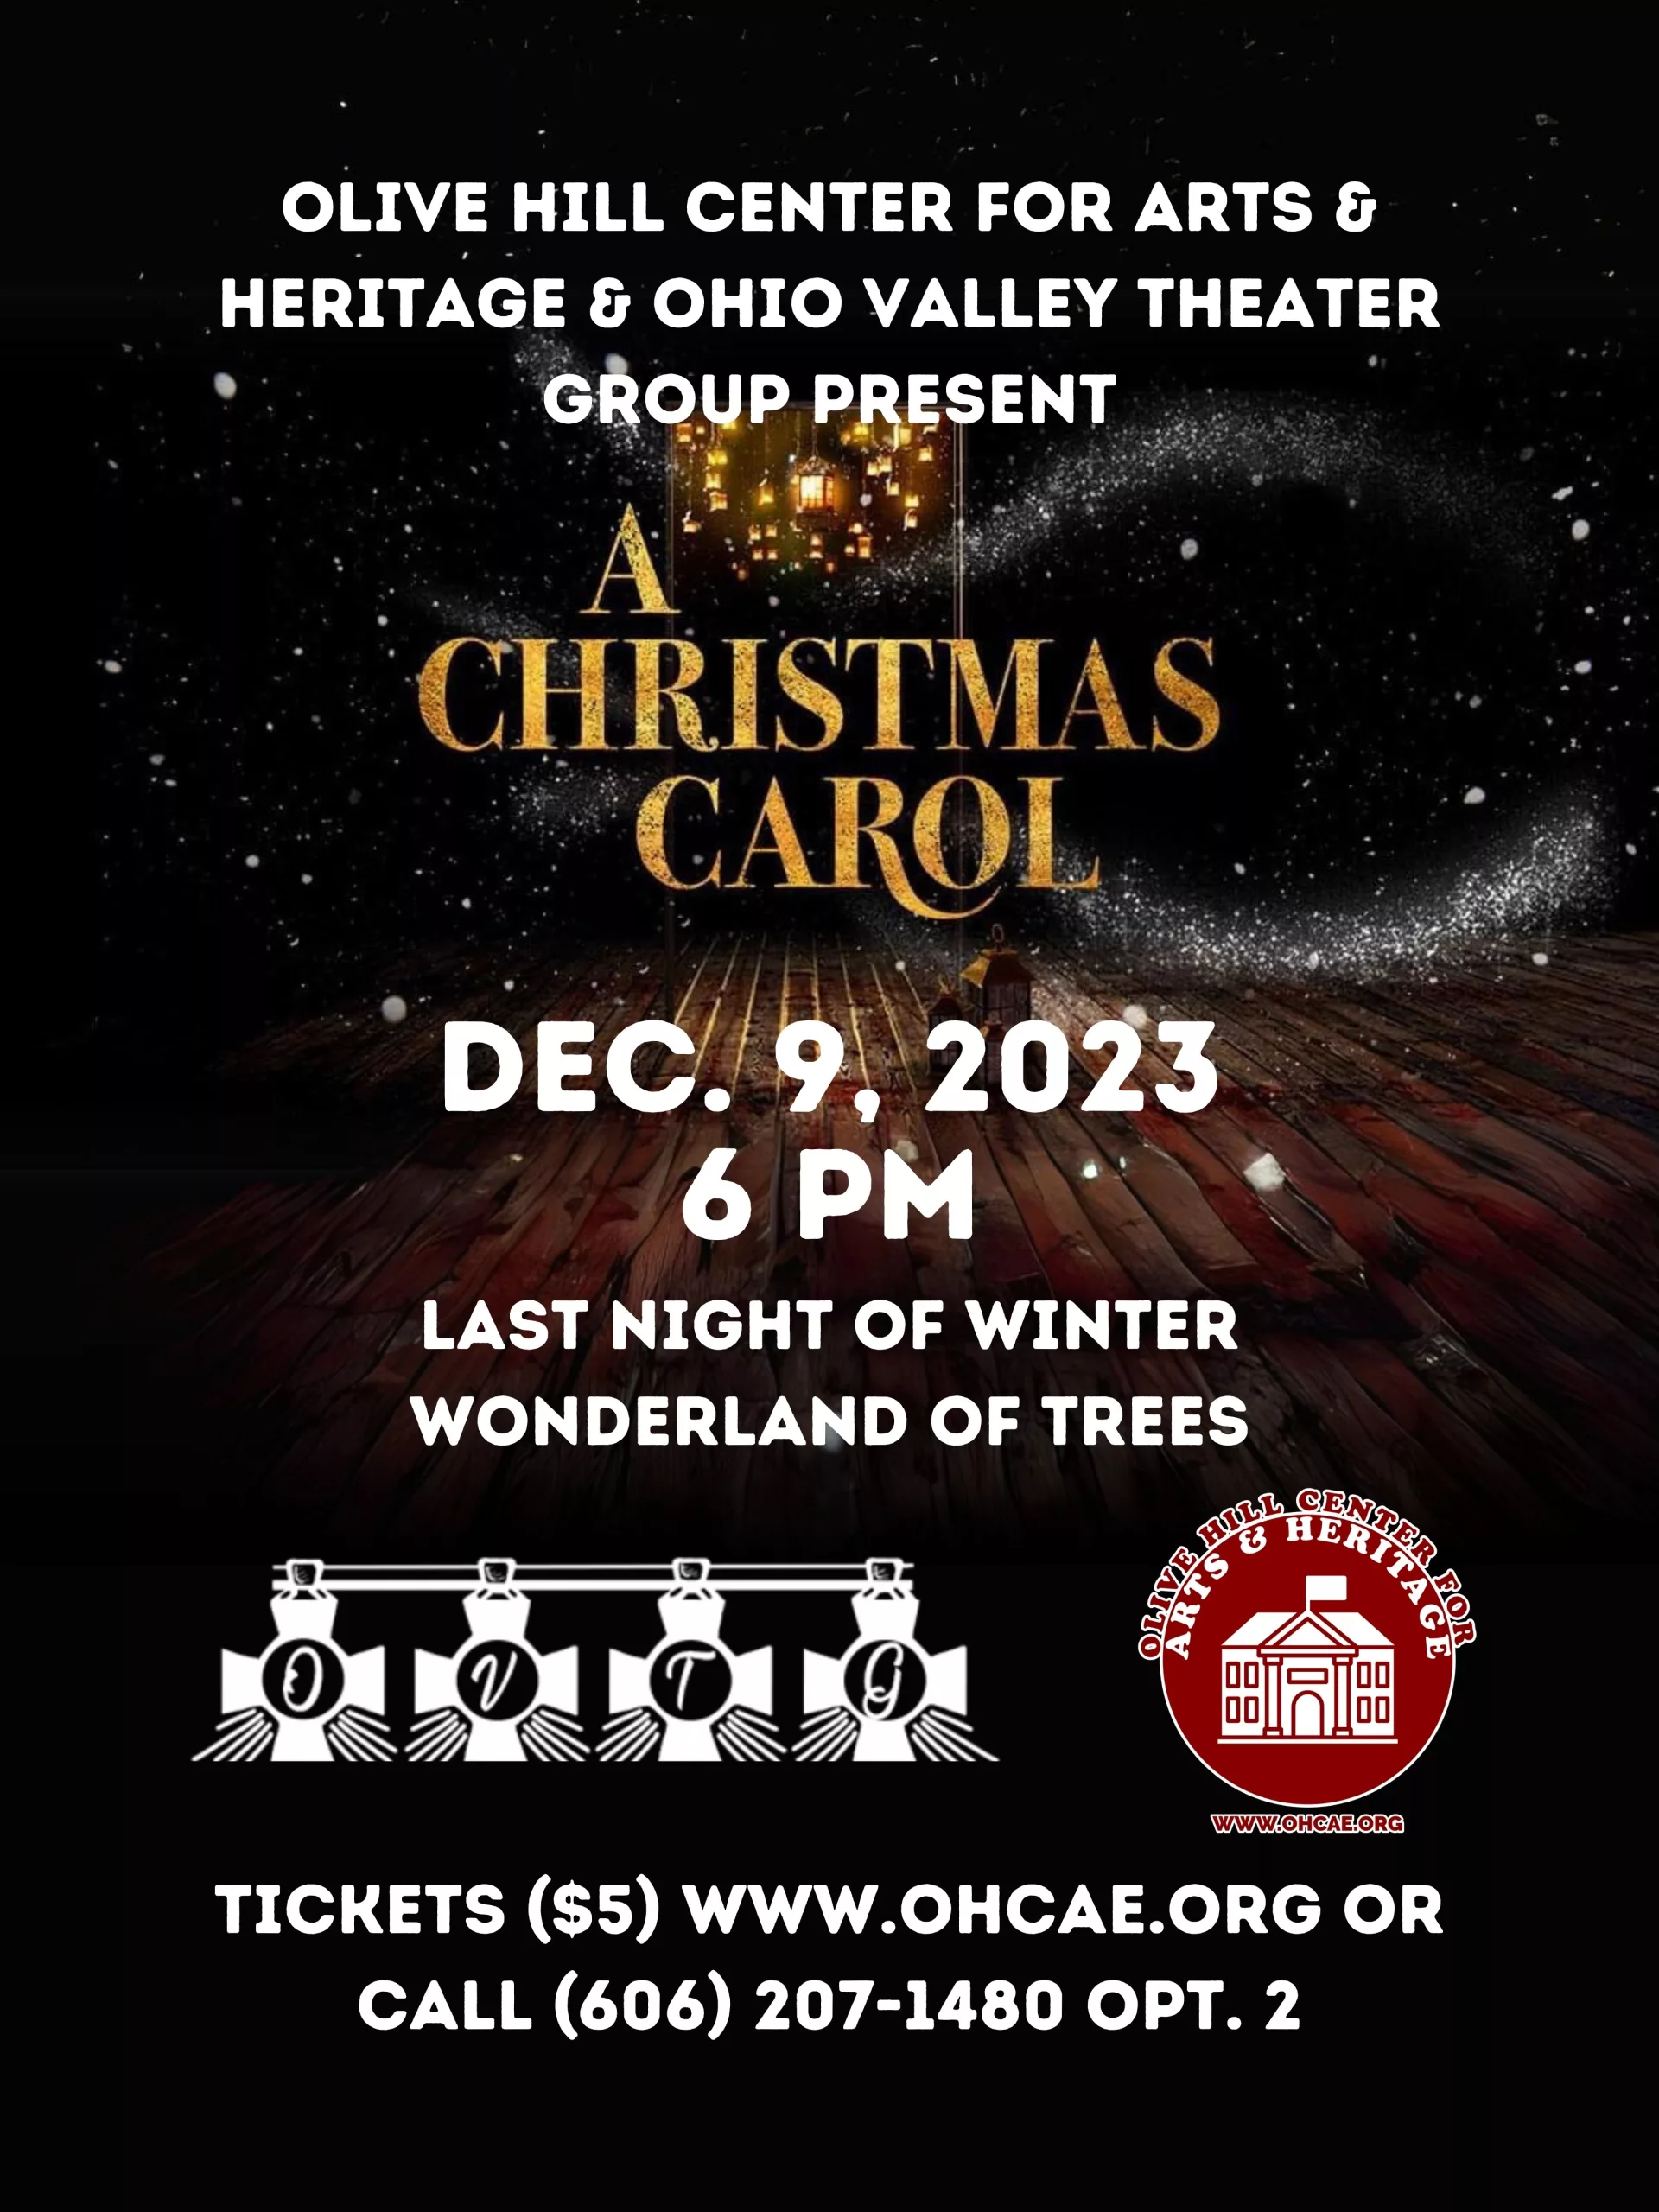 A Christmas Carol – Dec. 9, 2023